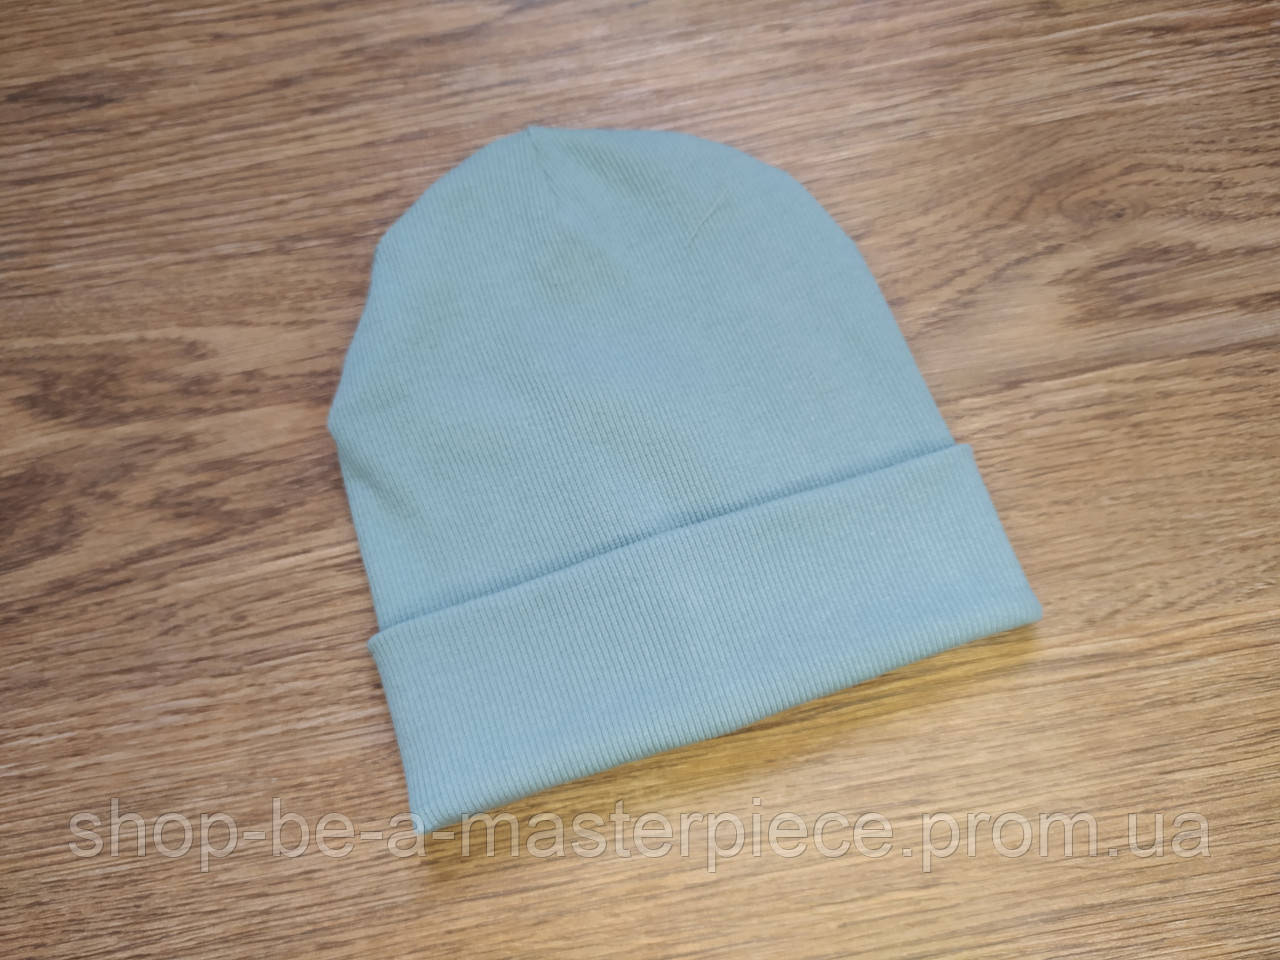 Трикотажна шапка onesize унісекс жіноча чоловіча подвійна з відворотом демісезонна в рубчик блакитний